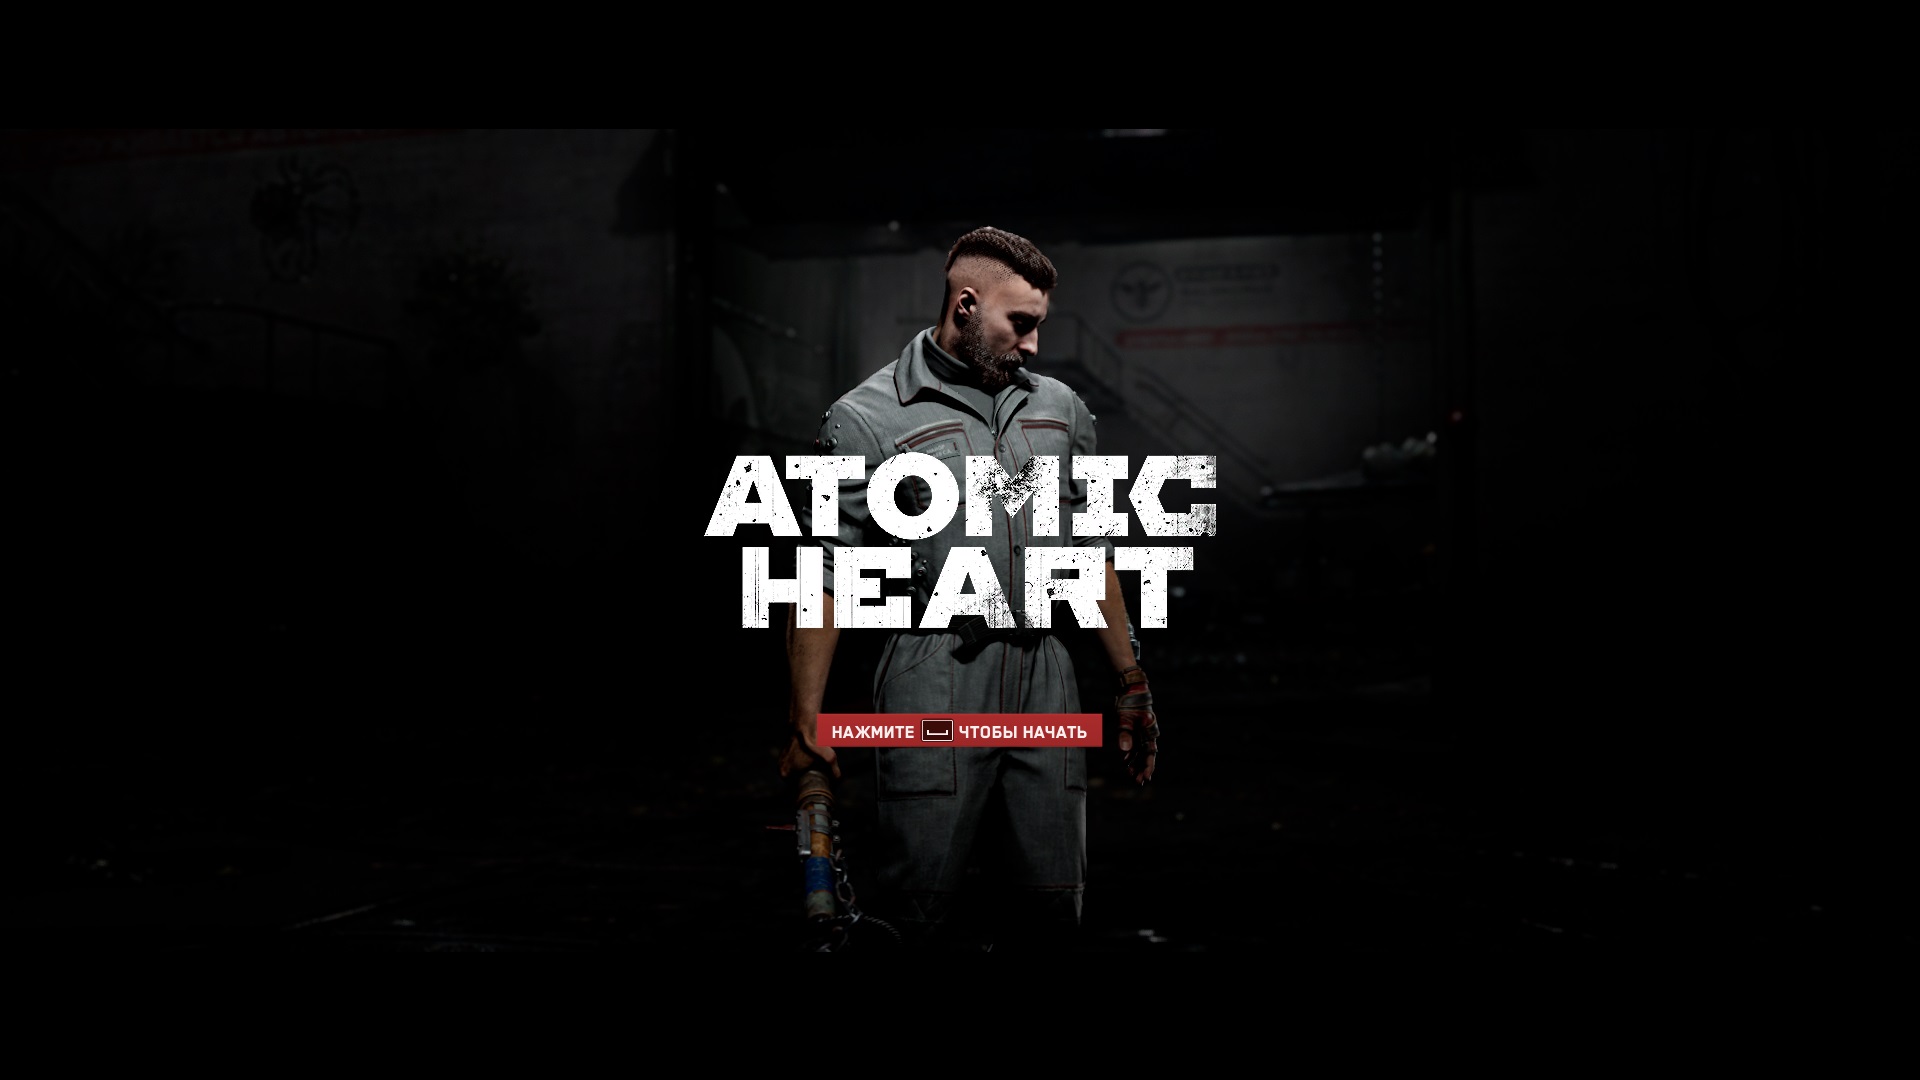 Как выключить заставку в Atomic Heart